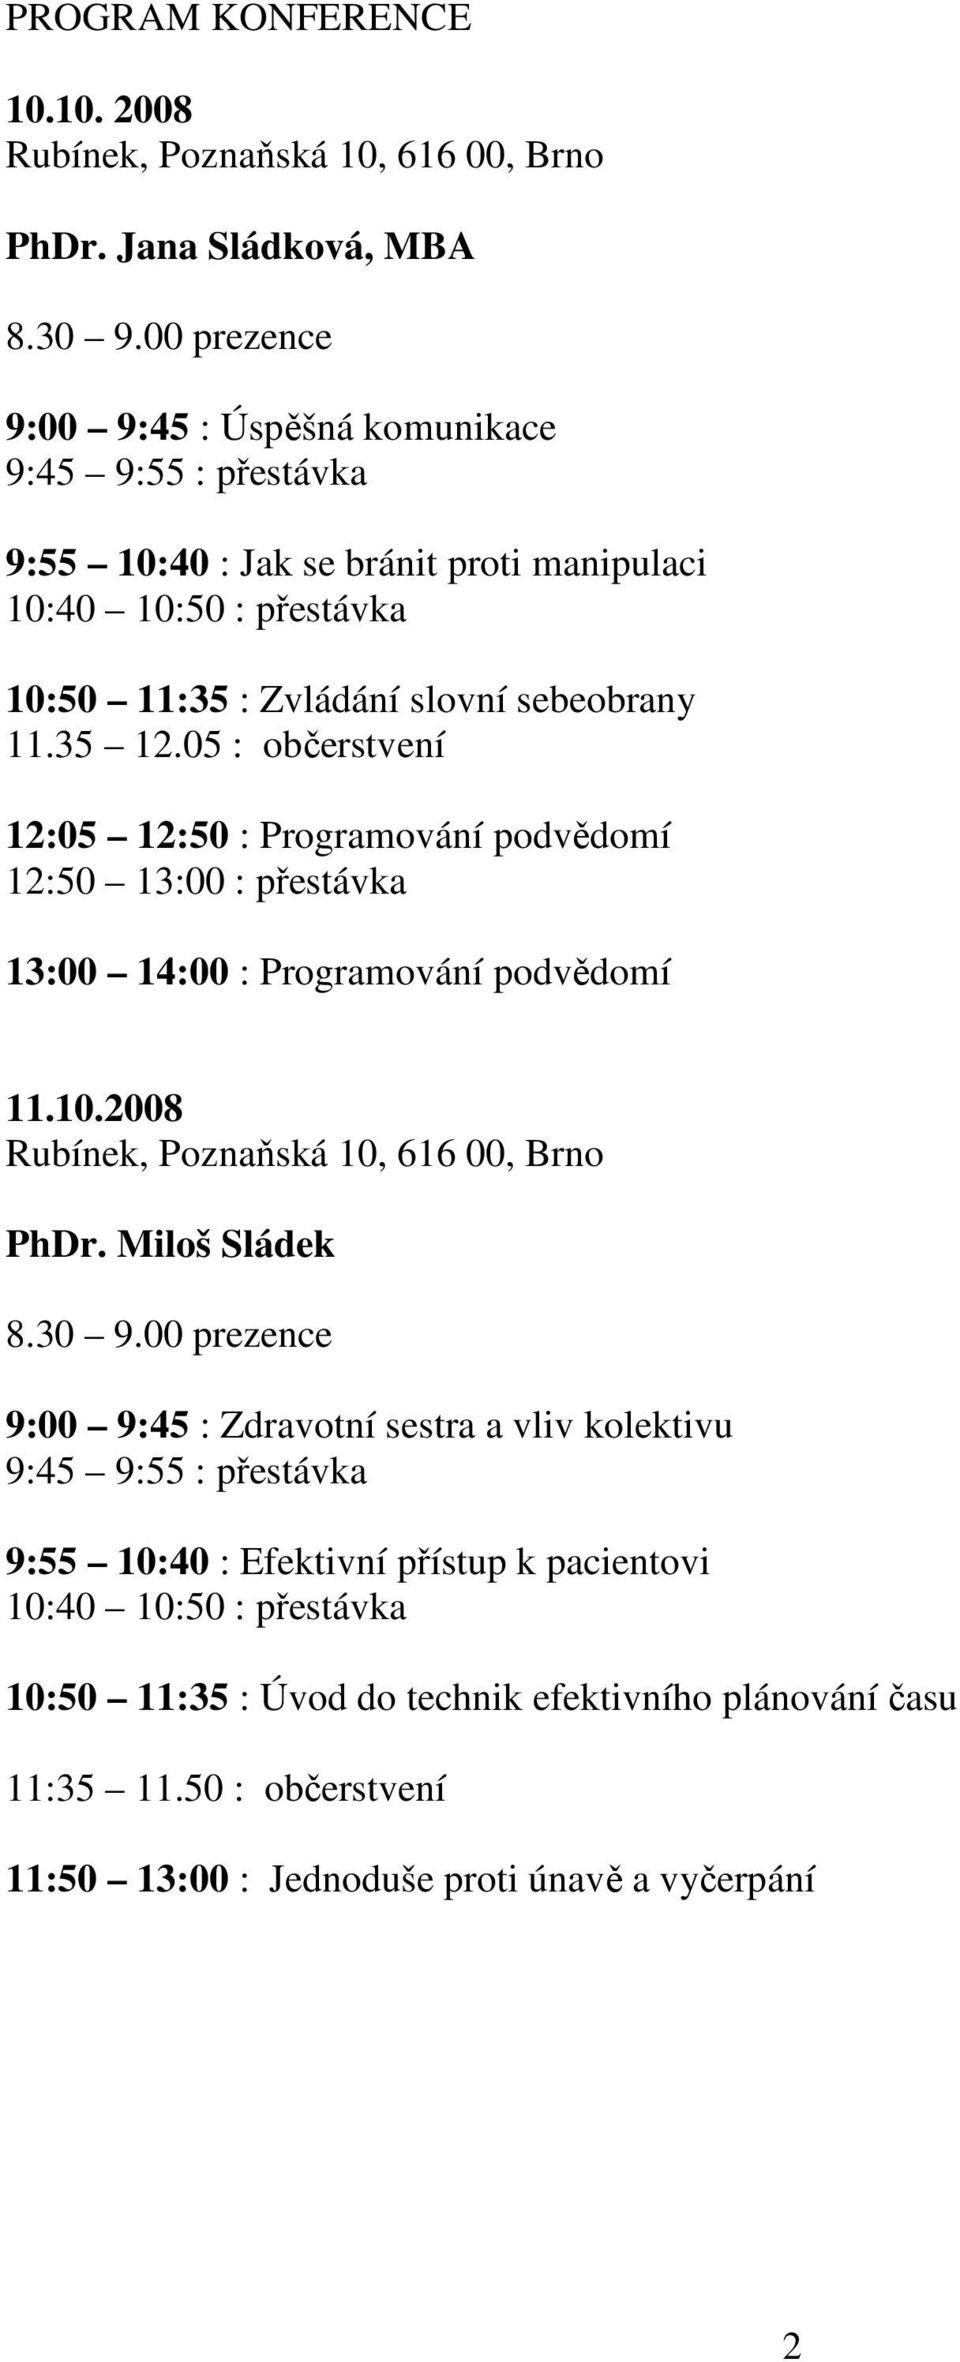 05 : občerstvení 12:05 12:50 : Programování podvědomí 12:50 13:00 : přestávka 13:00 14:00 : Programování podvědomí 11.10.2008 Rubínek, Poznaňská 10, 616 00, Brno PhDr. Miloš Sládek 8.30 9.